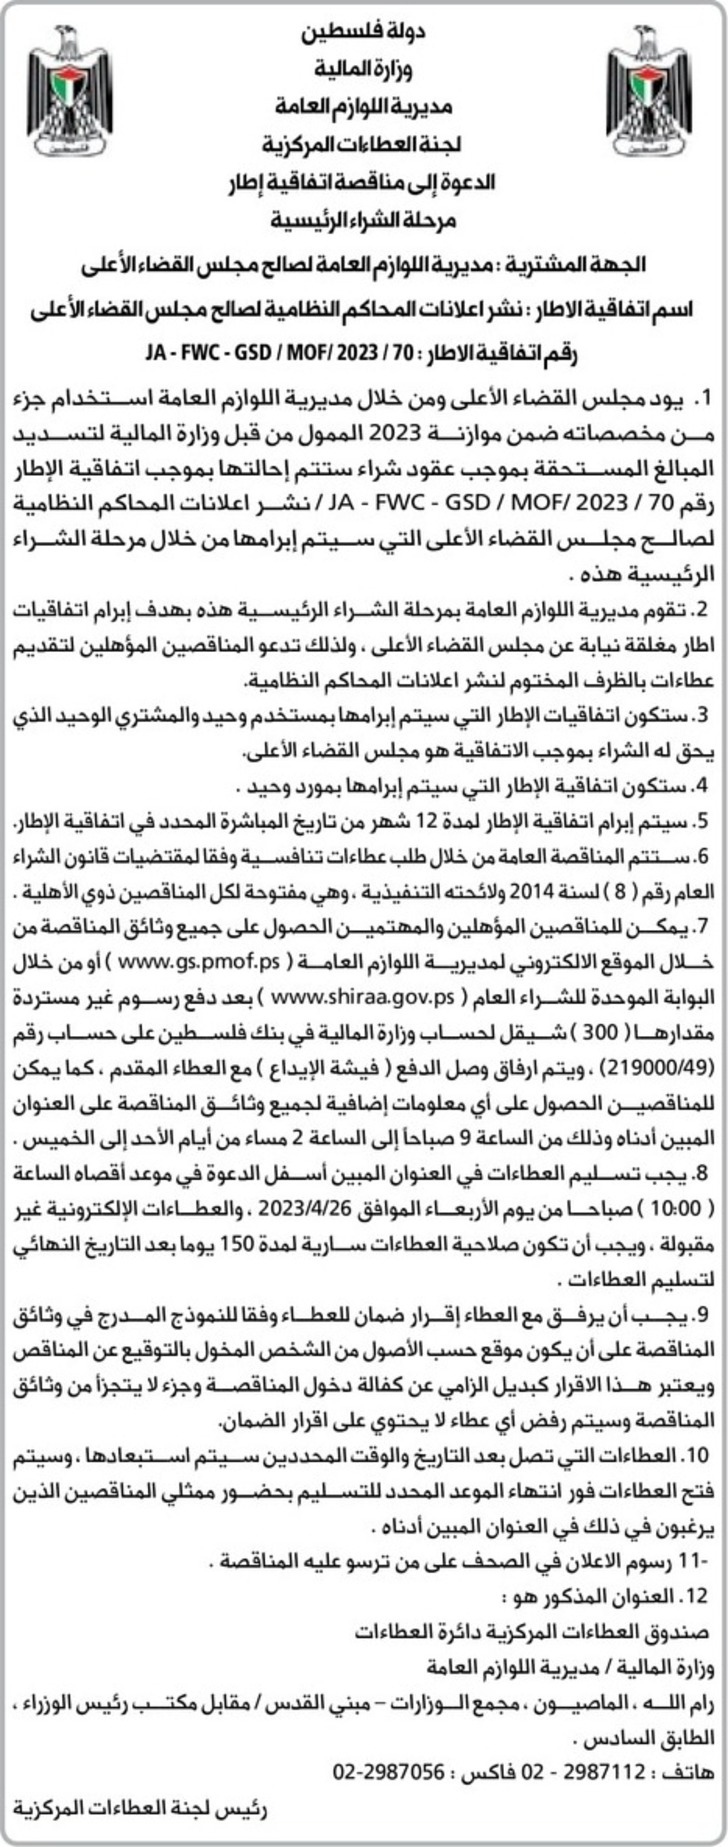  نشر اعلانات المحاكم النظامية لصالح مجلس القضاء الأعلى 